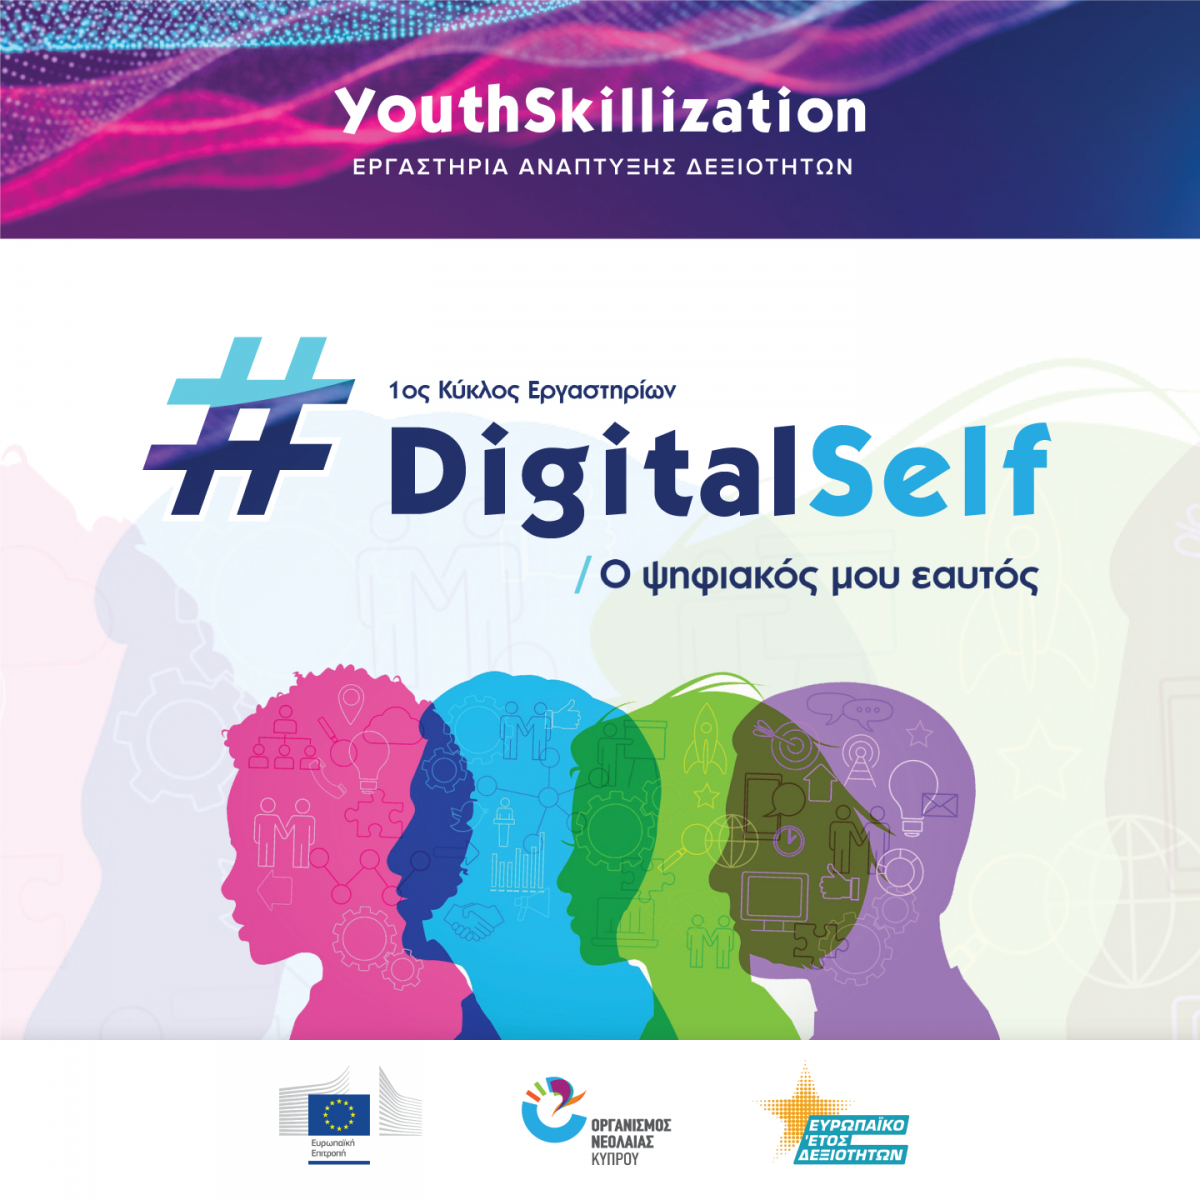 YouthSkillization: Εργαστήρια για να αναπτύξεις τις δεξιότητές σου